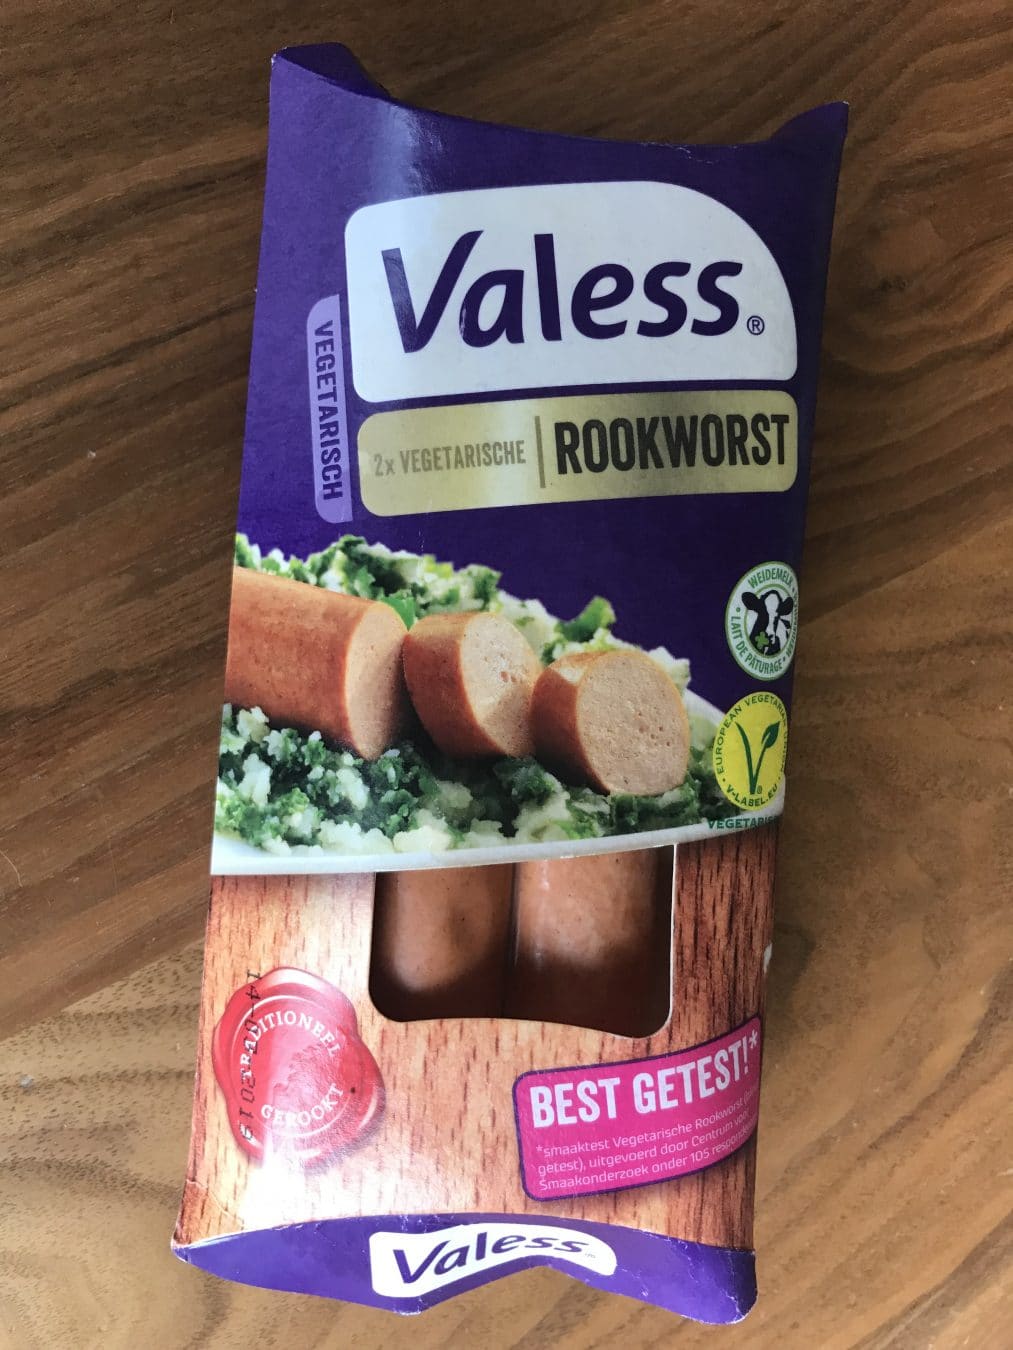 Review: Valess vegetarische rookworst